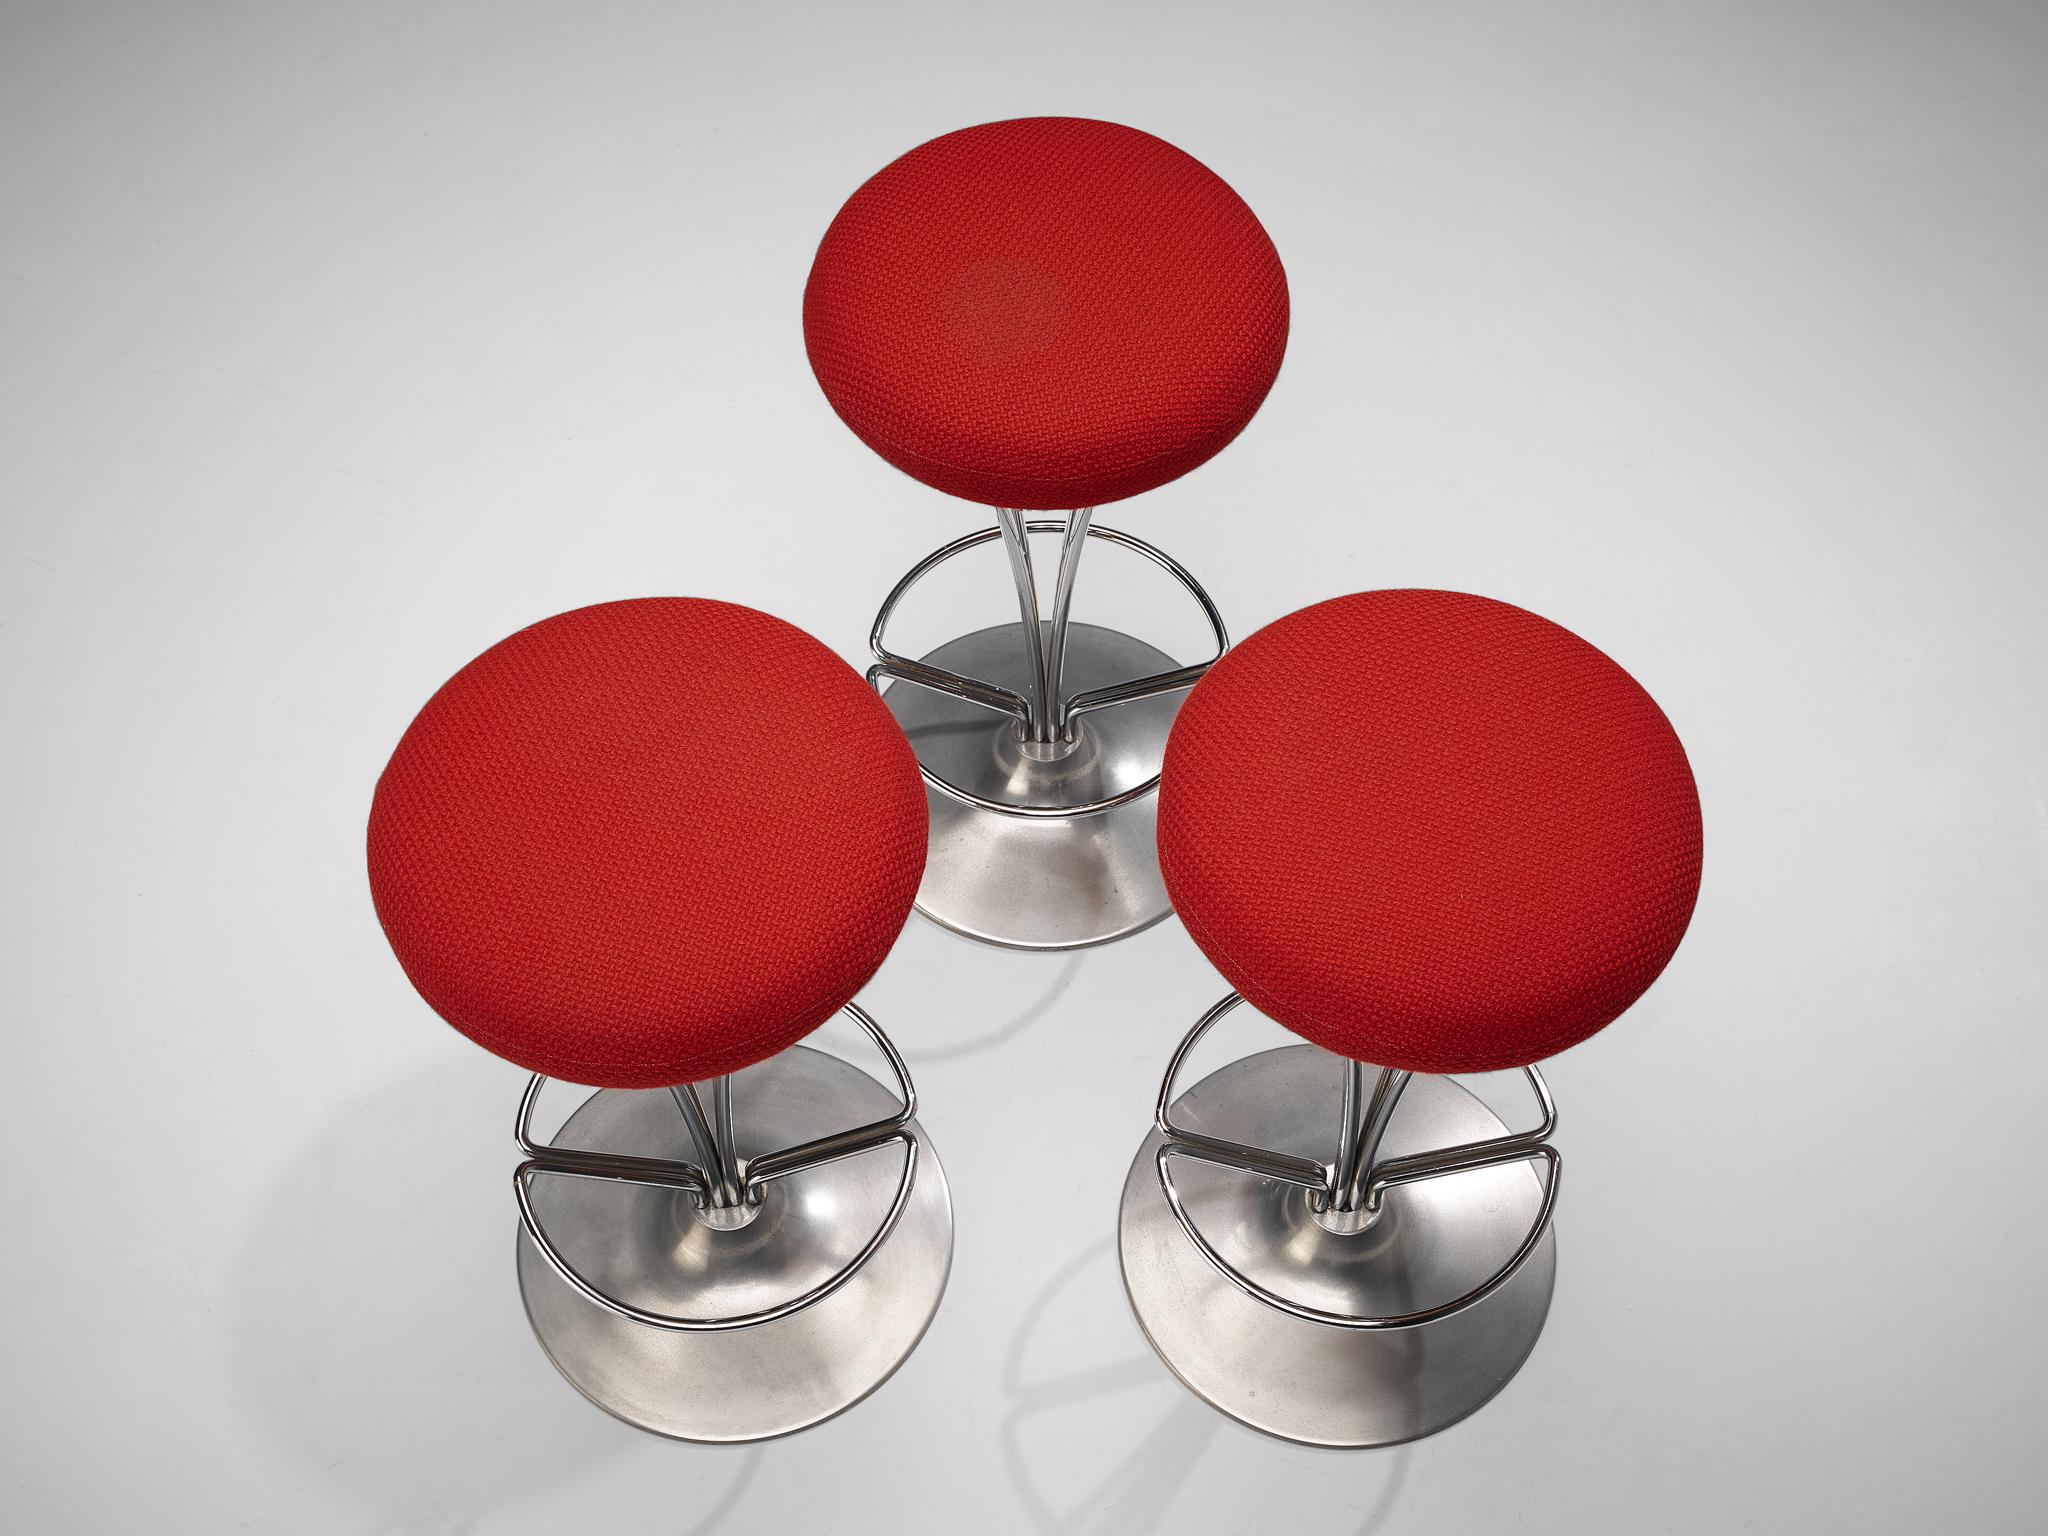 Fin du 20e siècle Piet Hein pour Fritz Hansen - Ensemble de trois tabourets de bar en métal avec sièges rouges en vente